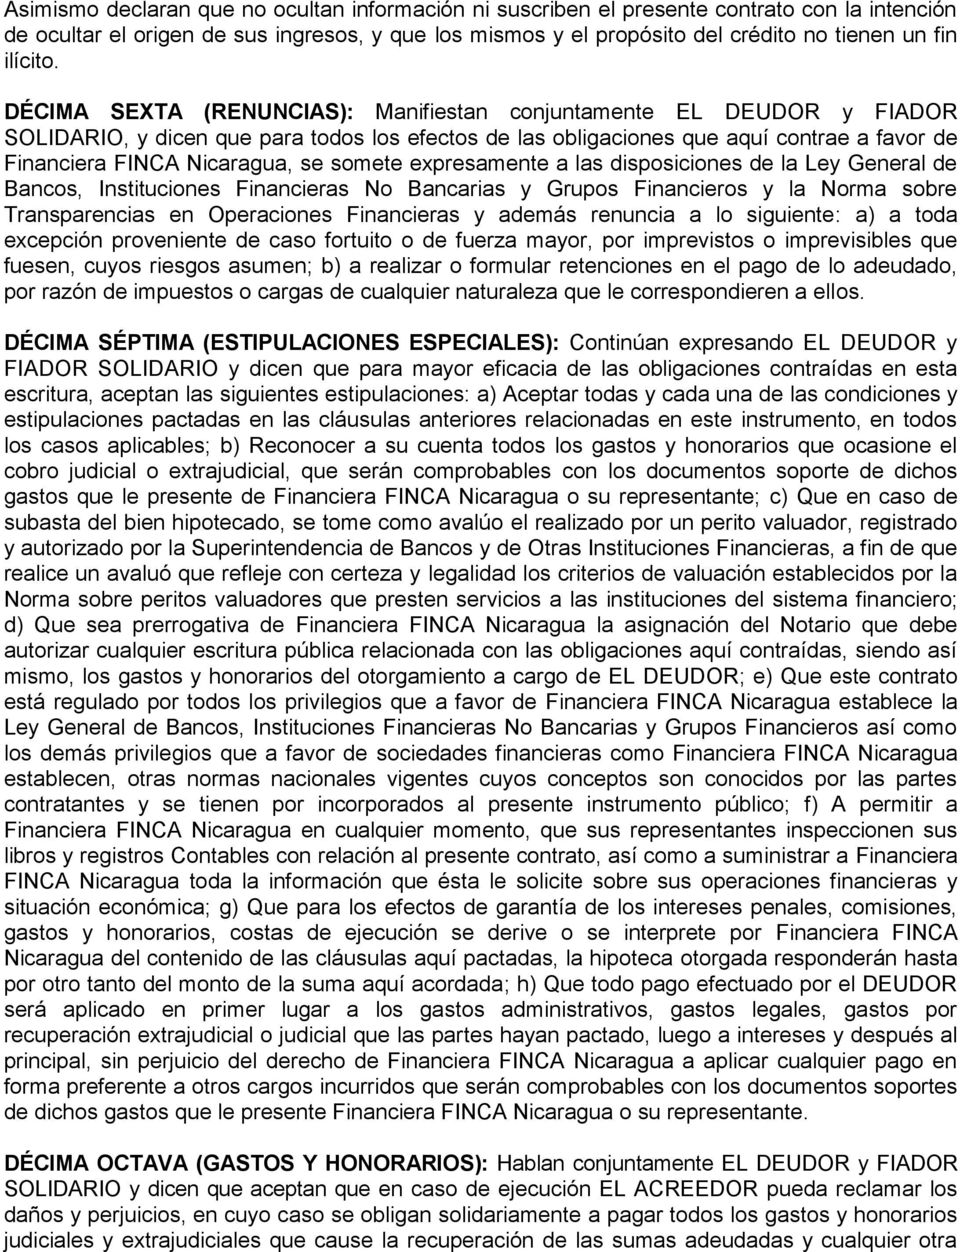 DÉCIMA SEXTA (RENUNCIAS): Manifiestan conjuntamente EL DEUDOR y FIADOR SOLIDARIO, y dicen que para todos los efectos de las obligaciones que aquí contrae a favor de Financiera FINCA Nicaragua, se